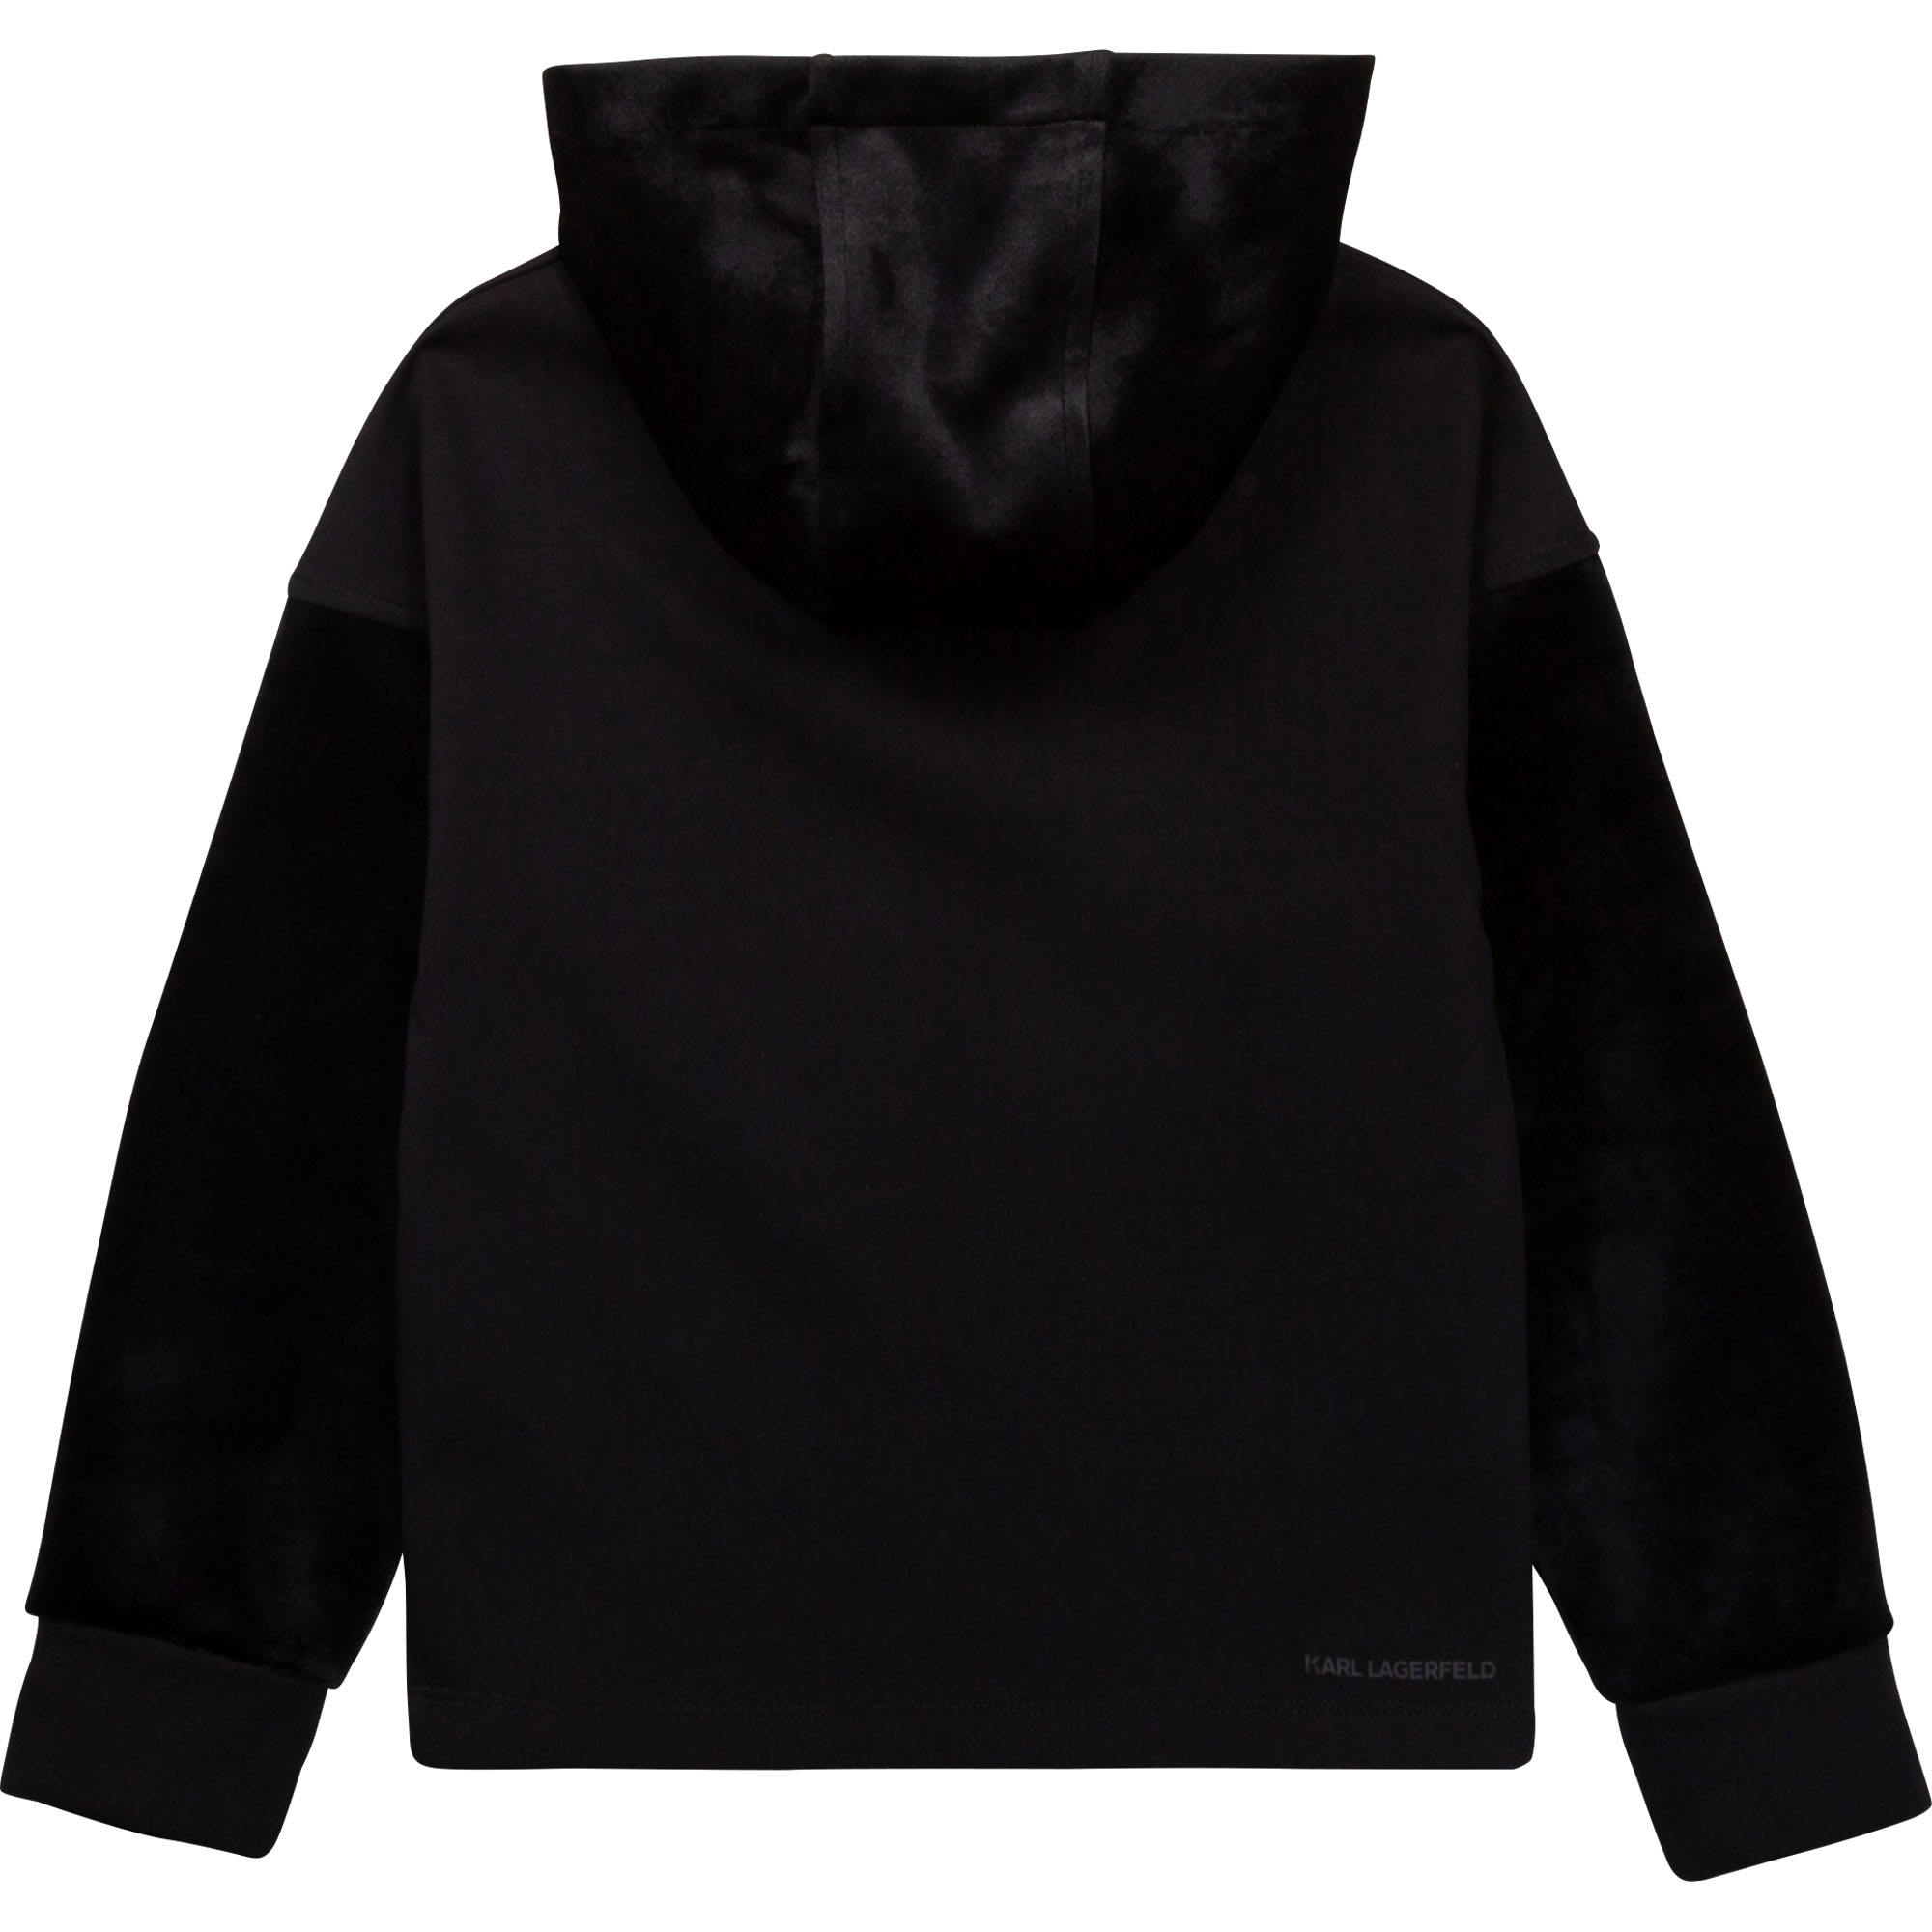 Dual-material hooded sweatshirt KARL LAGERFELD KIDS for BOY